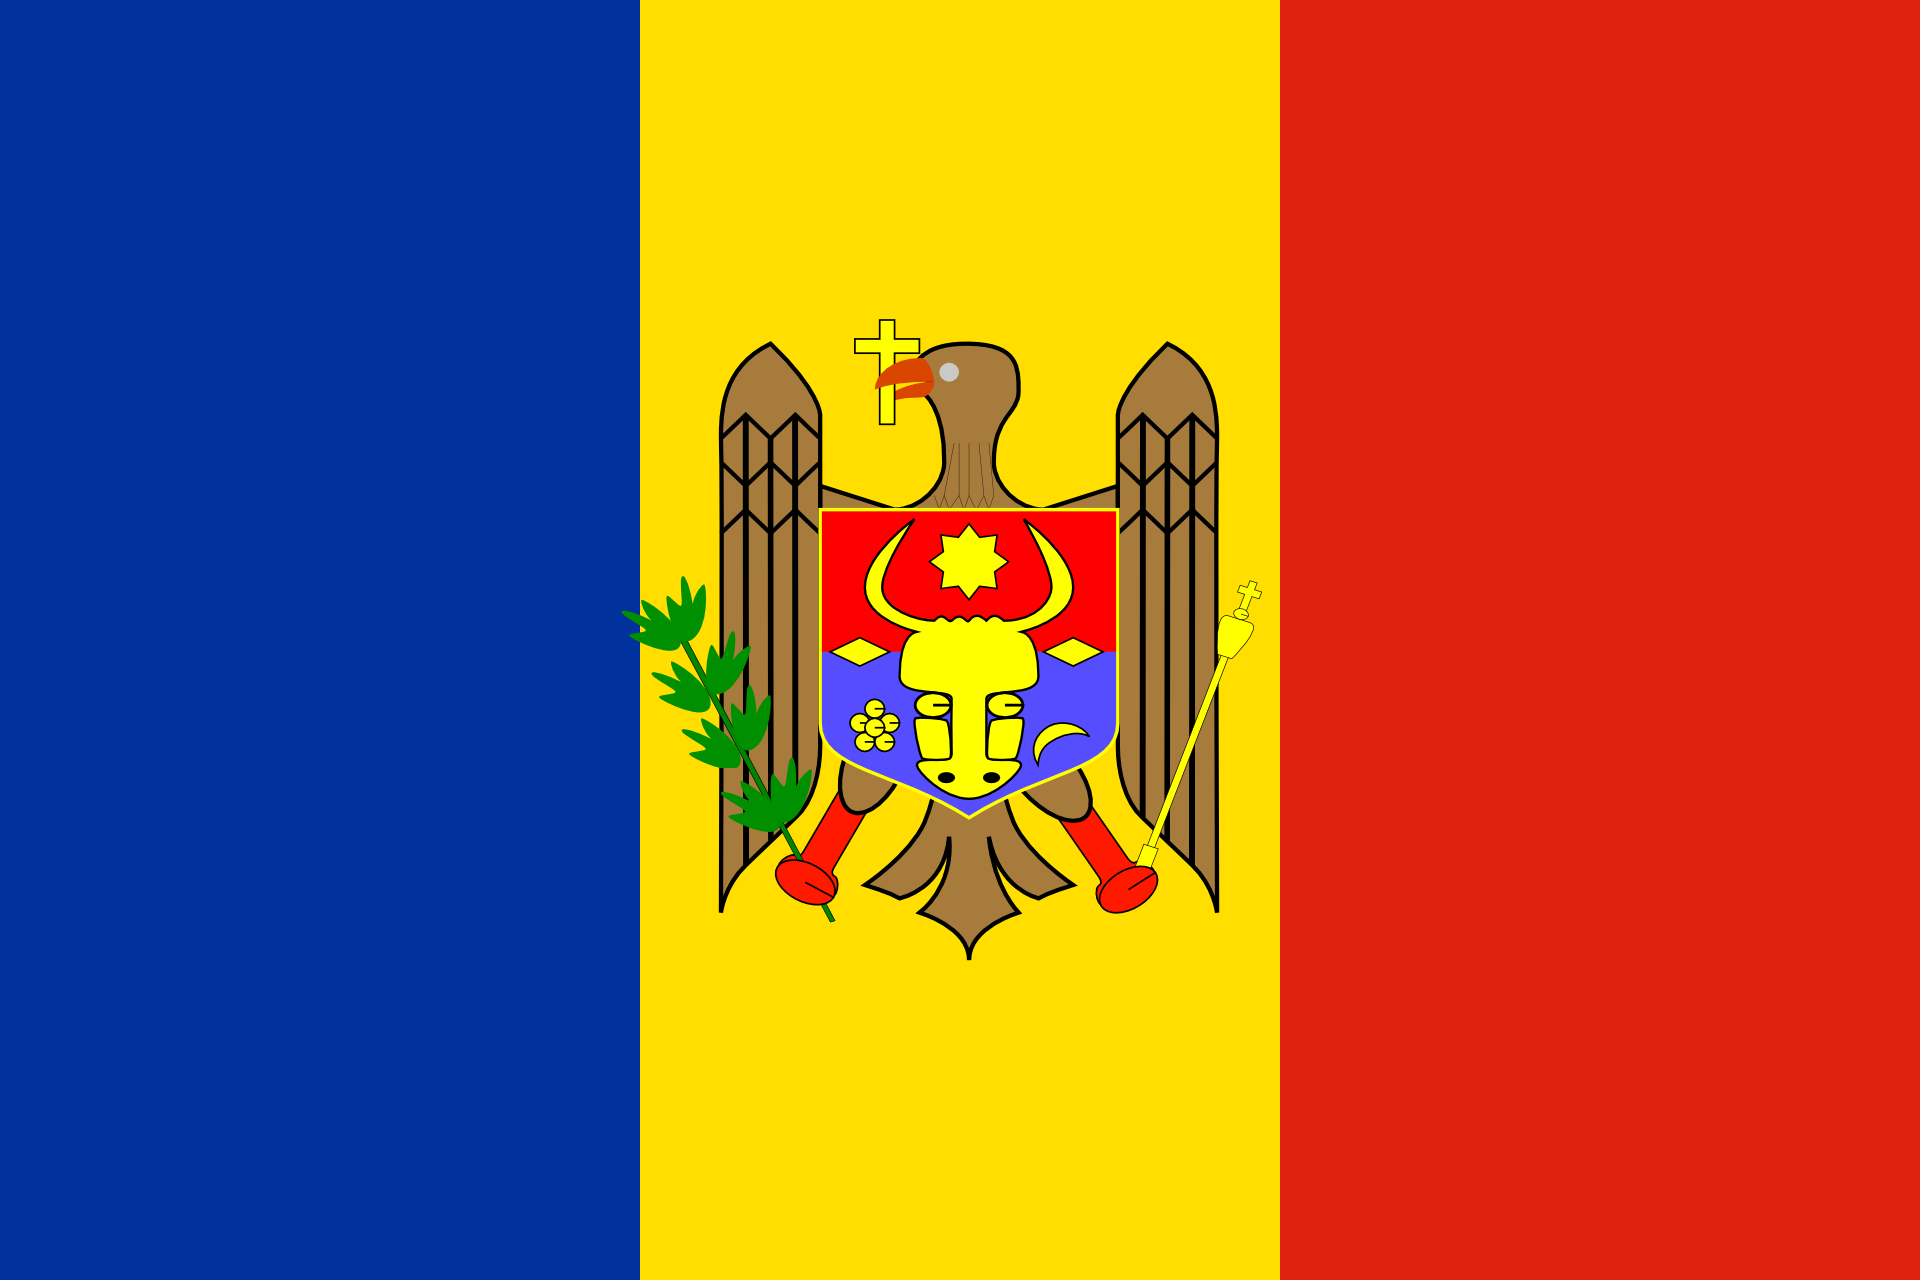 Флаг молдавской республики. Флаг Республики Молдавии. Прапор Молдови. Флаг Молдовы хорошего качества. Флаг Кишинева.